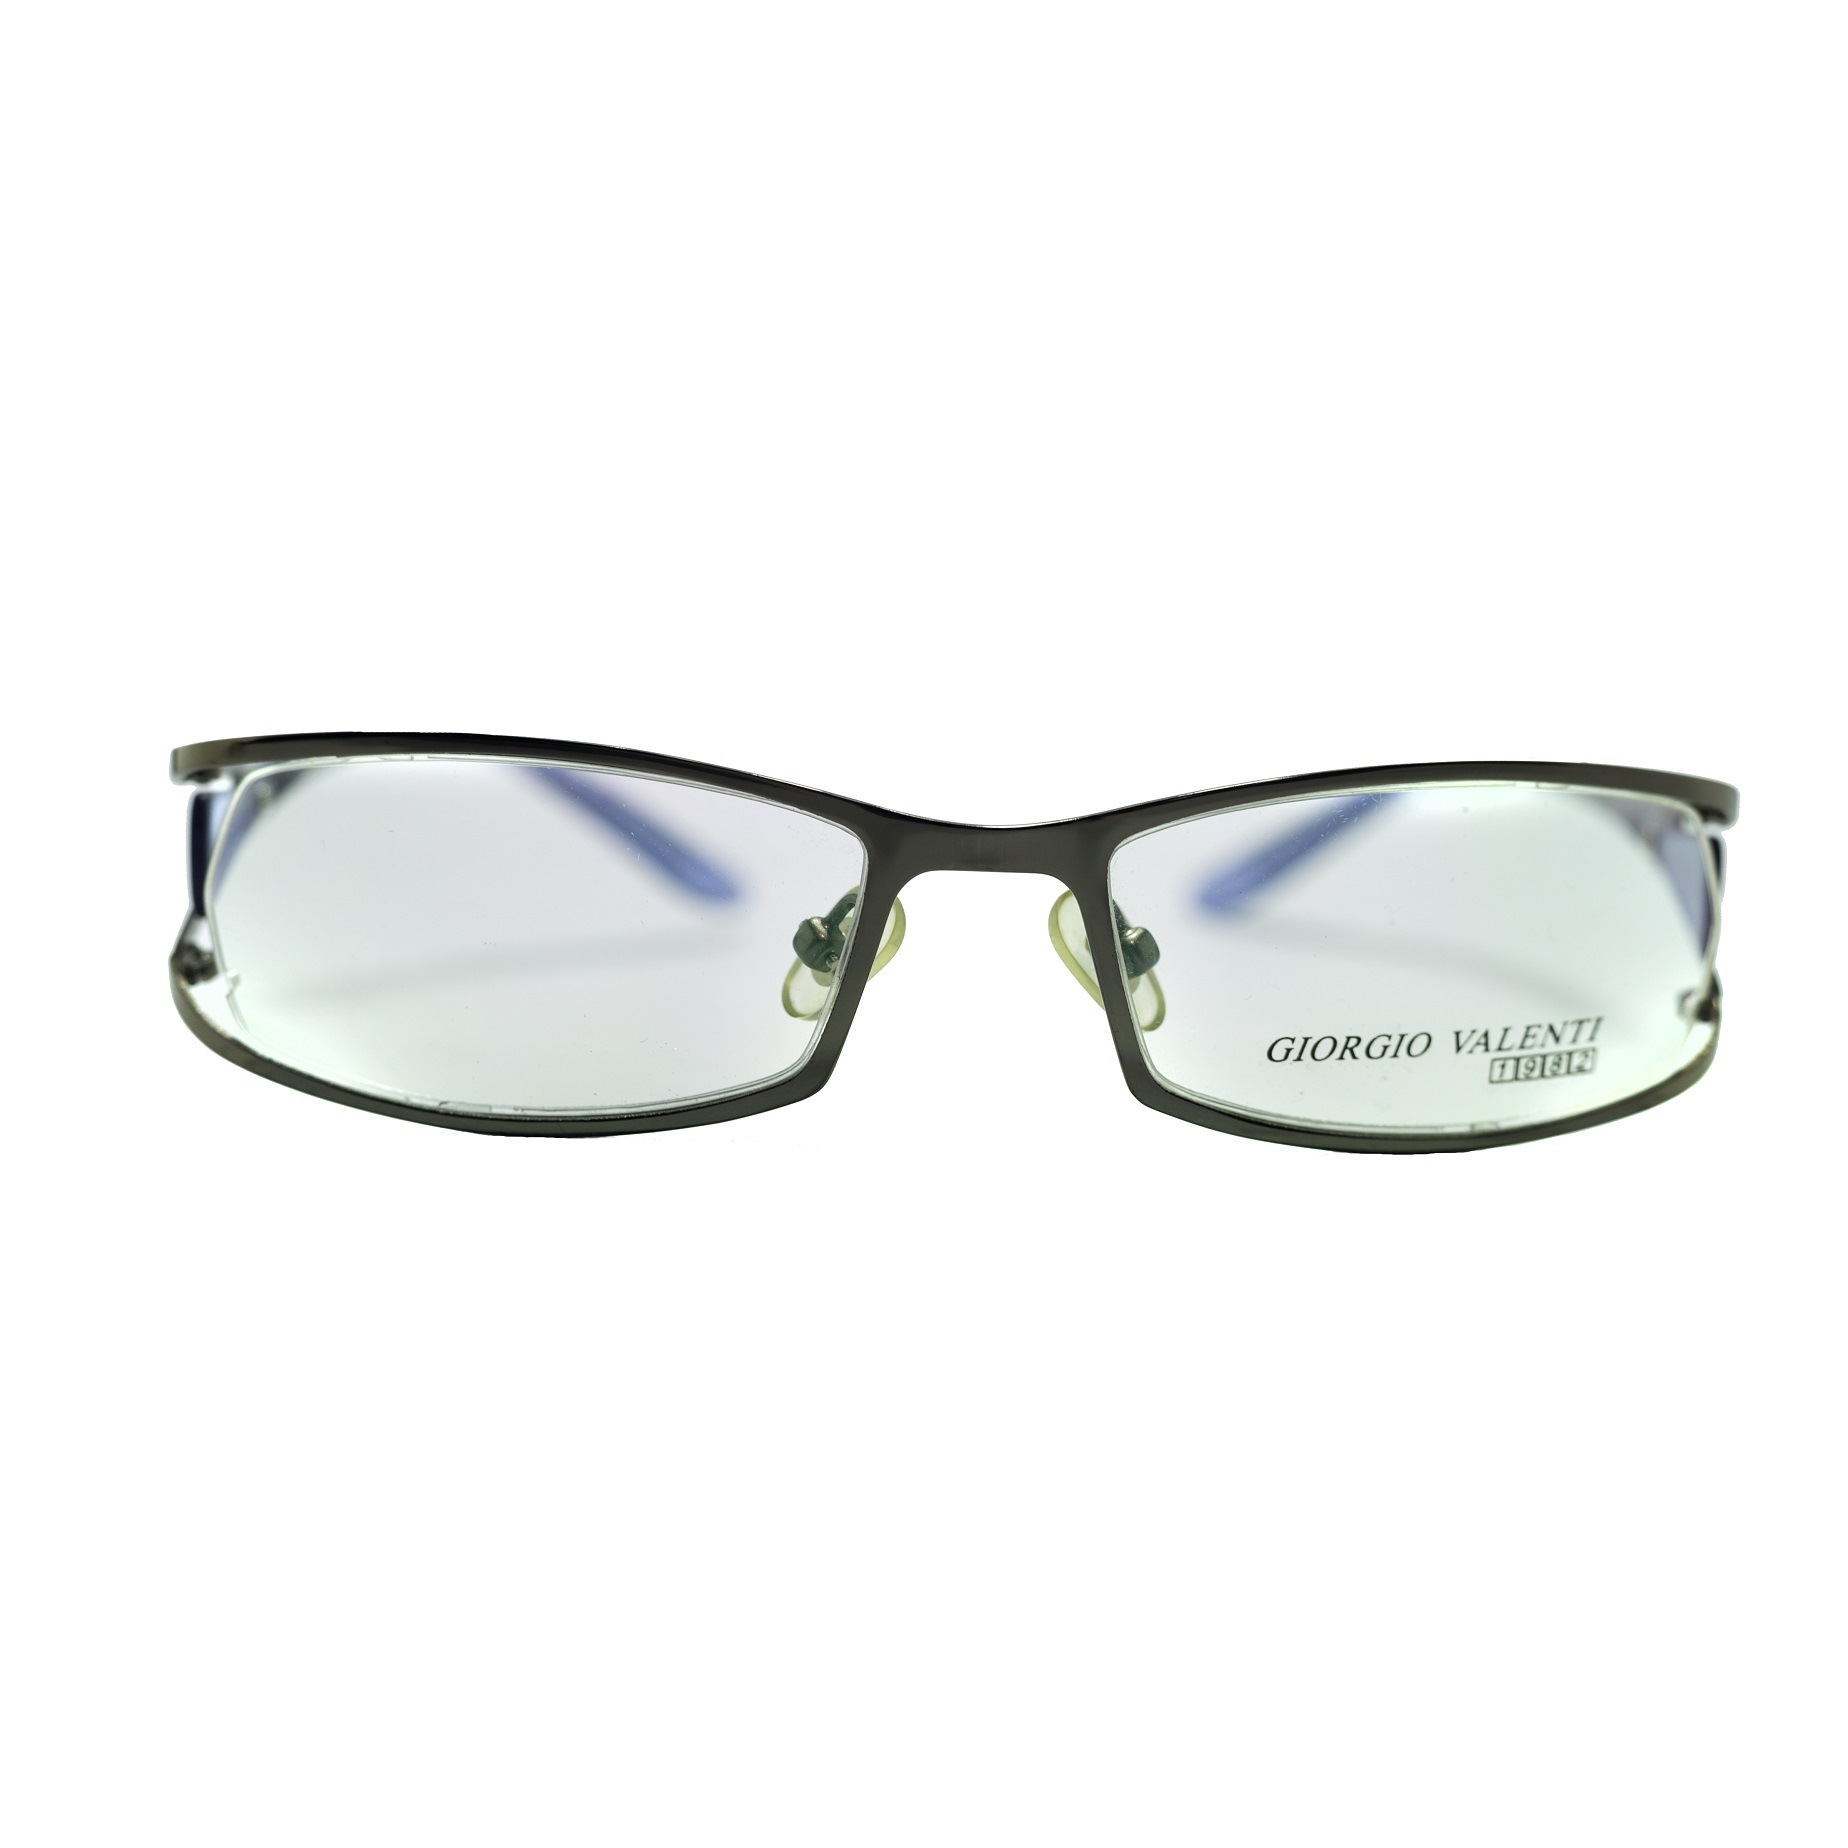 فریم عینک طبی جورجیو ولنتی مدل 649